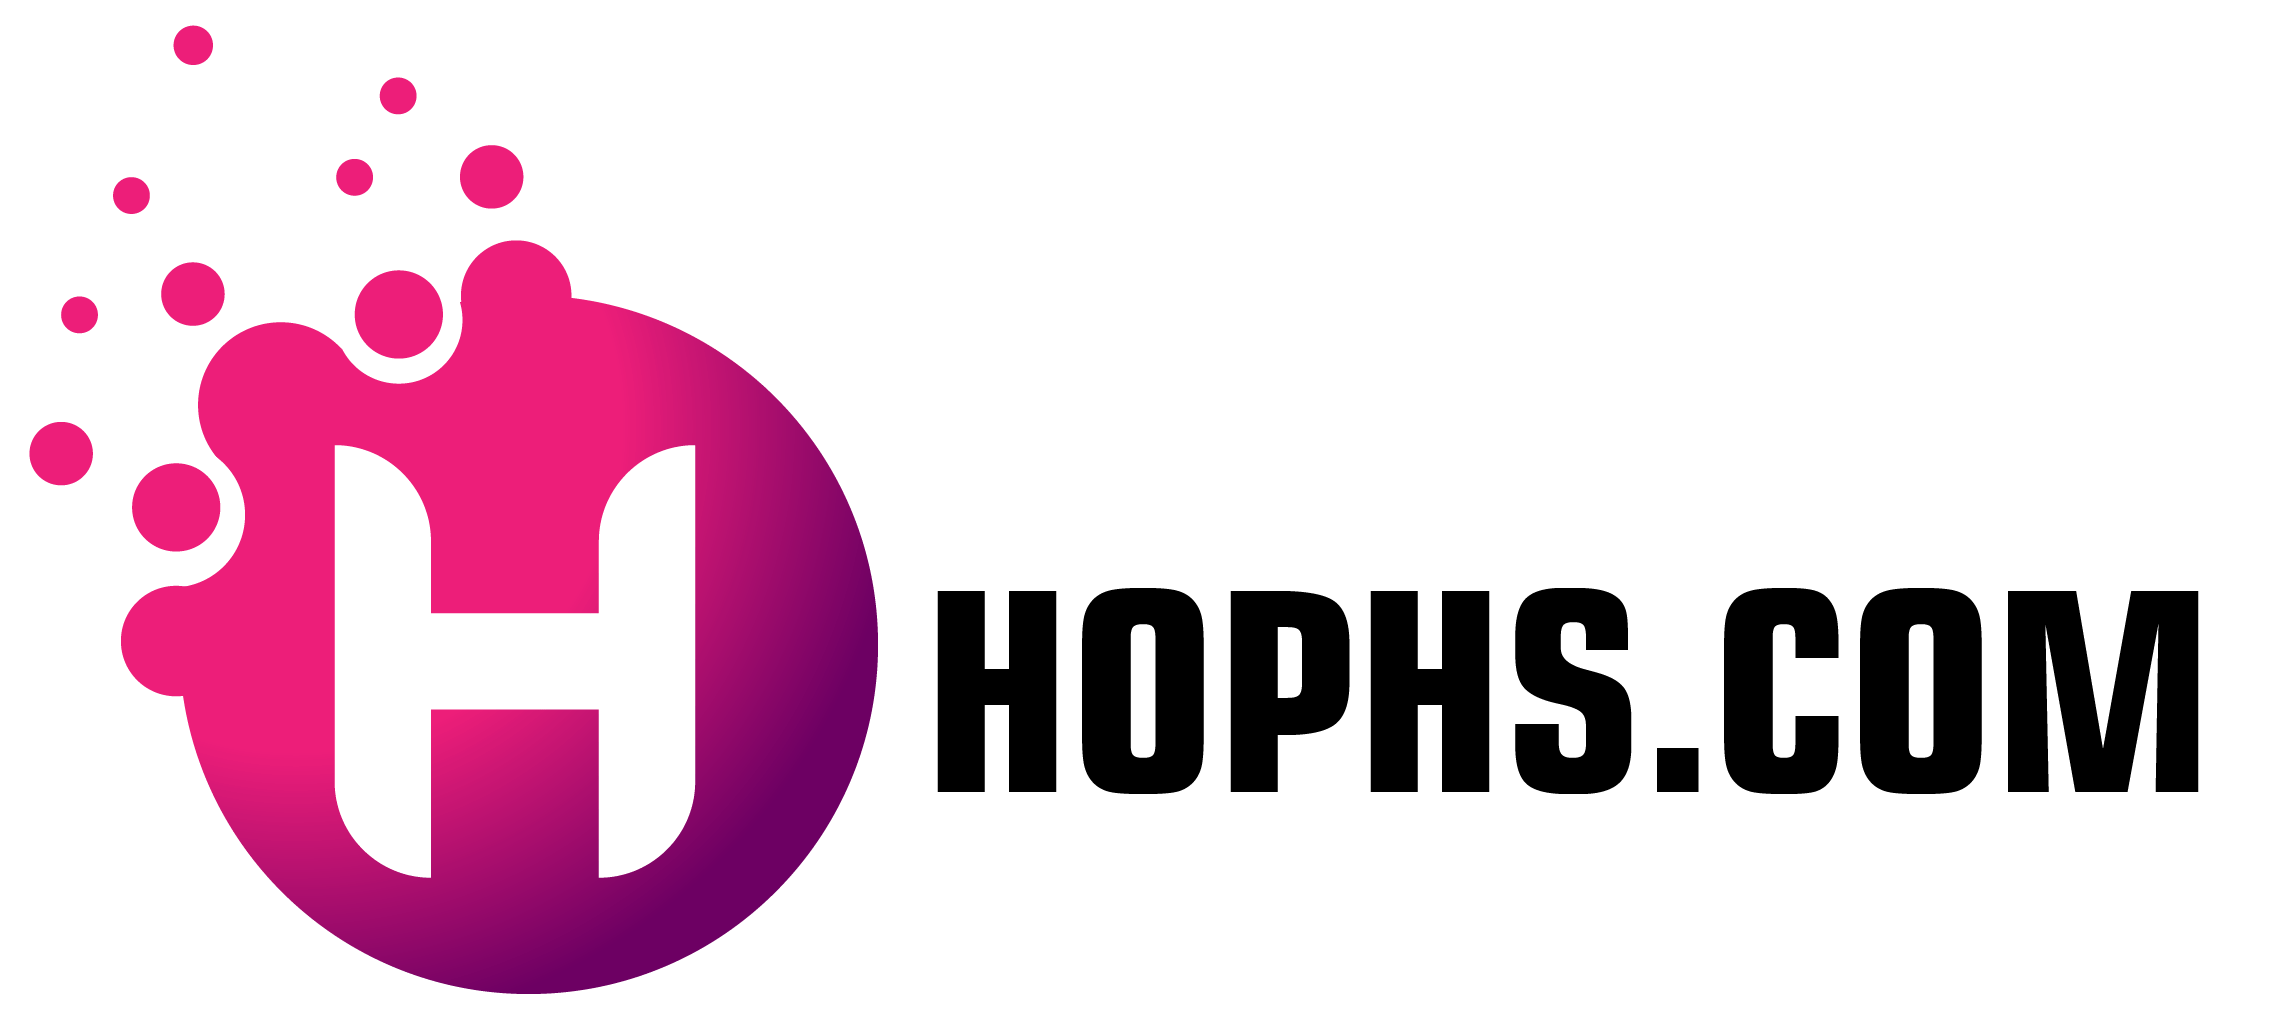 Hophs.com